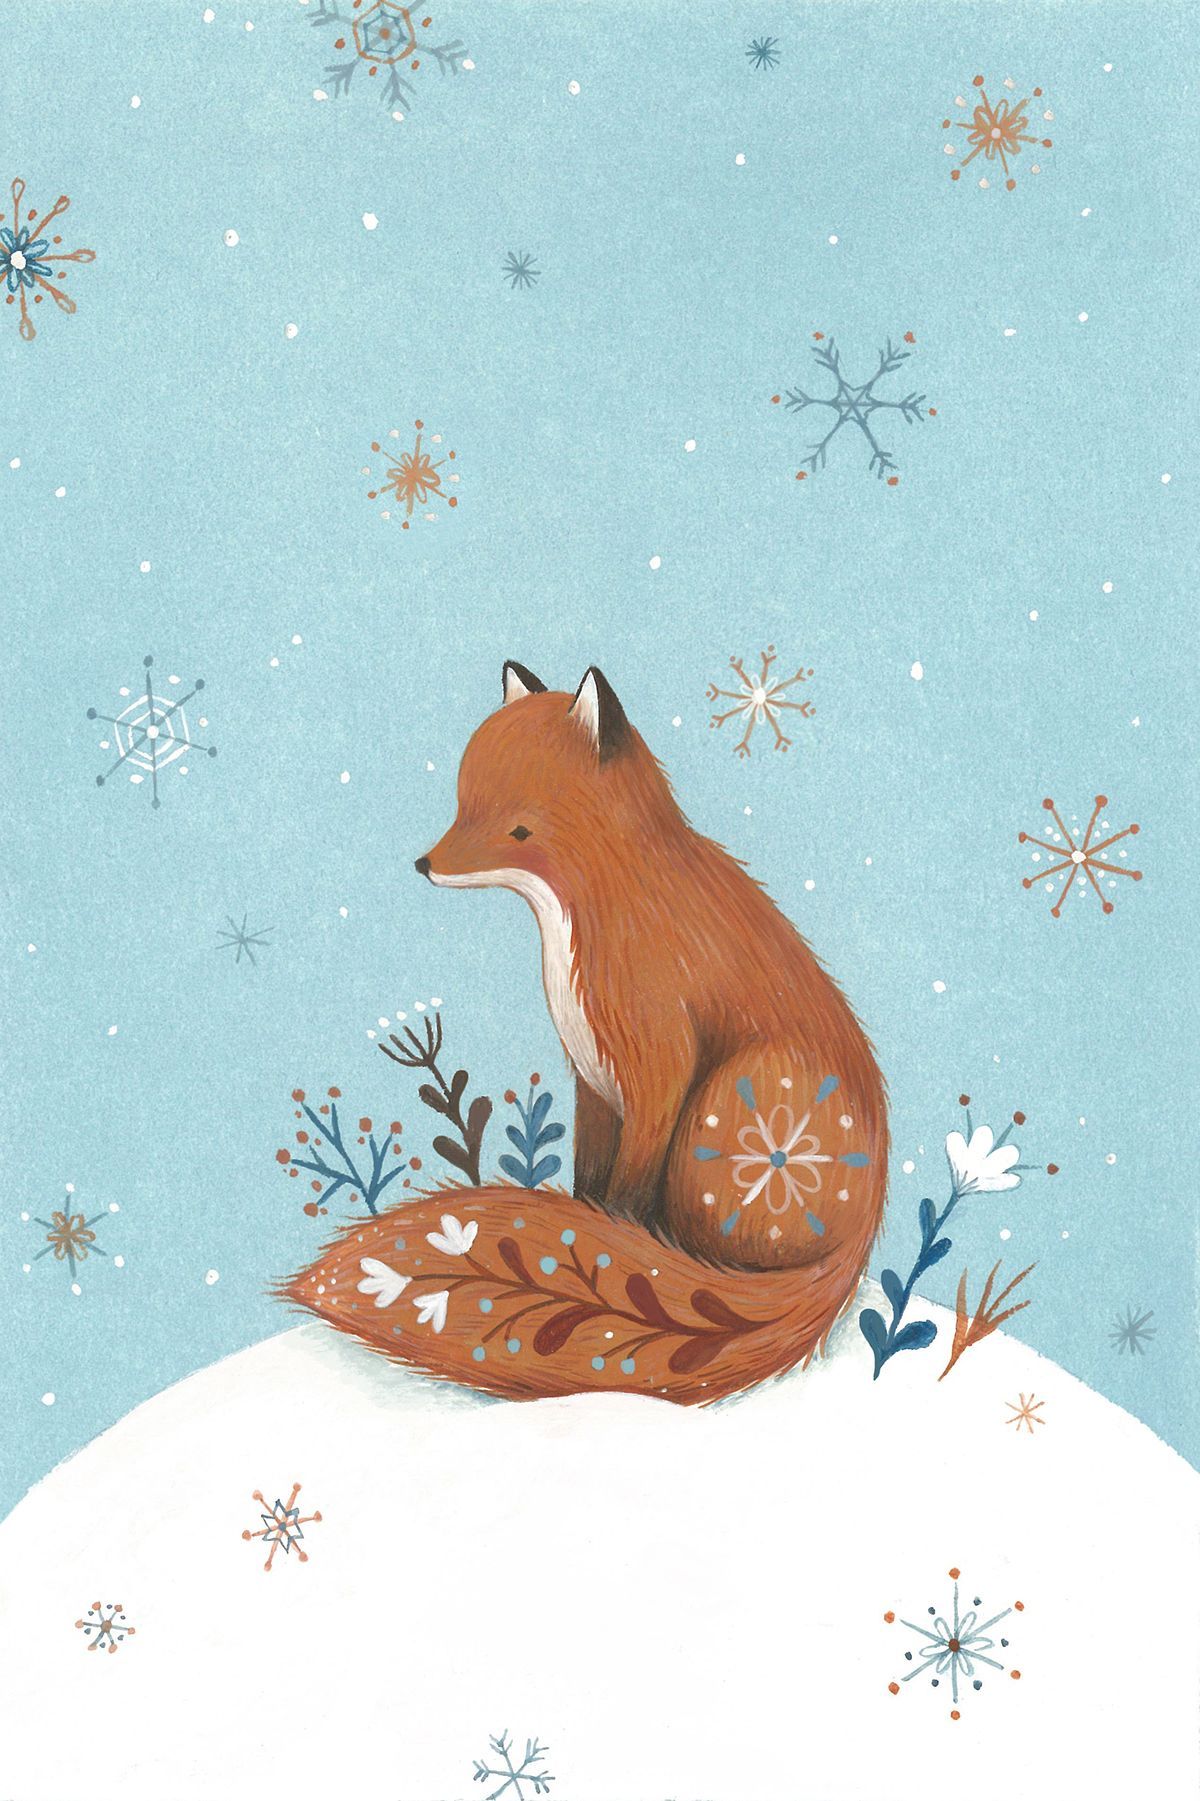 Nina Stajner. Fox illustration, Fox art, Animal illustration